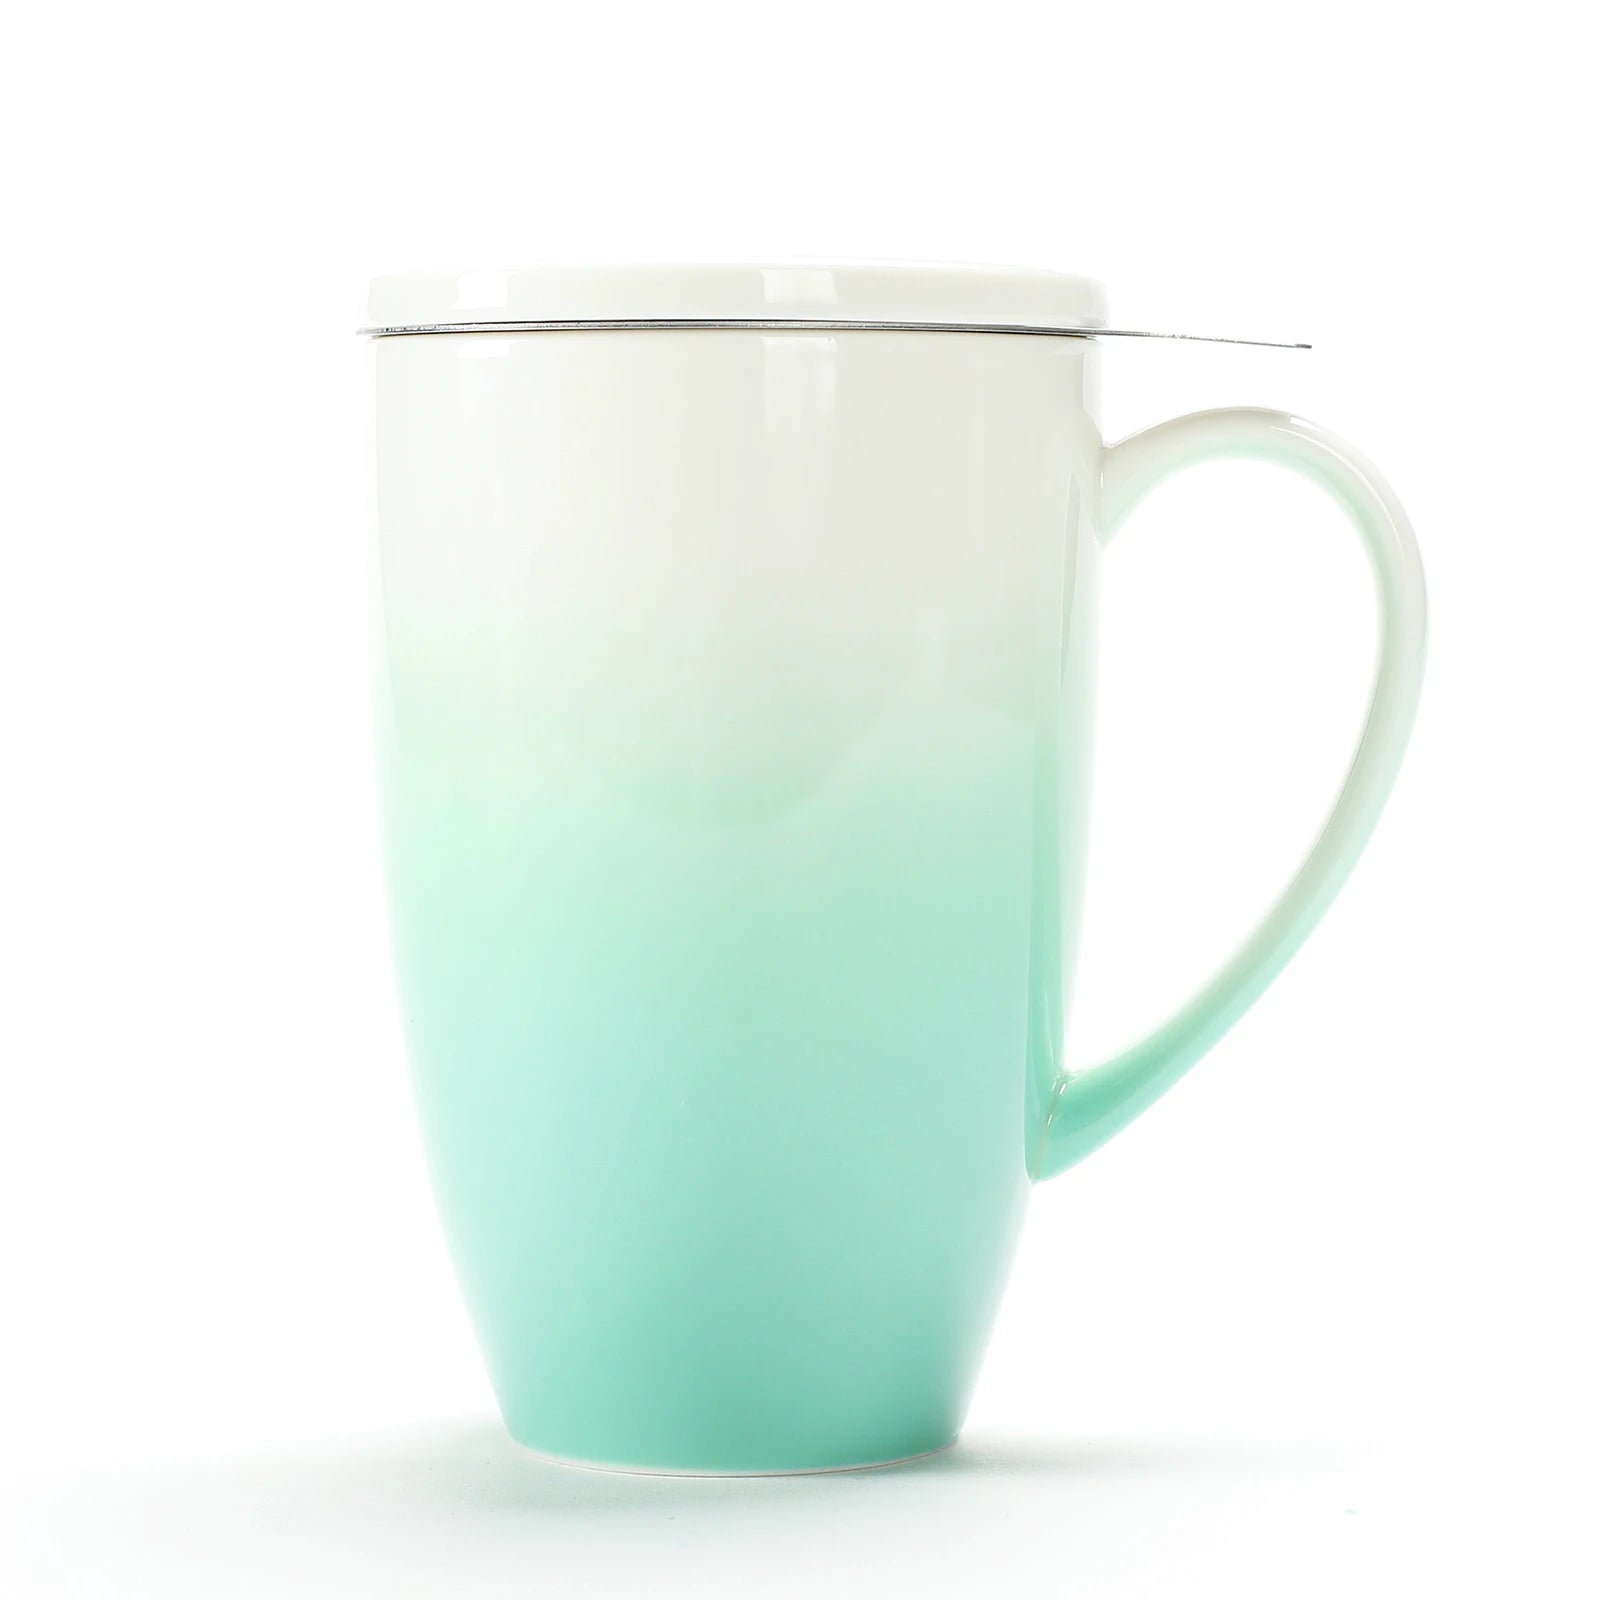 DAVIDsTEA Matcha Maker Light Blue 14 oz Travel Mug Frother Tea Infuser  Tumbler